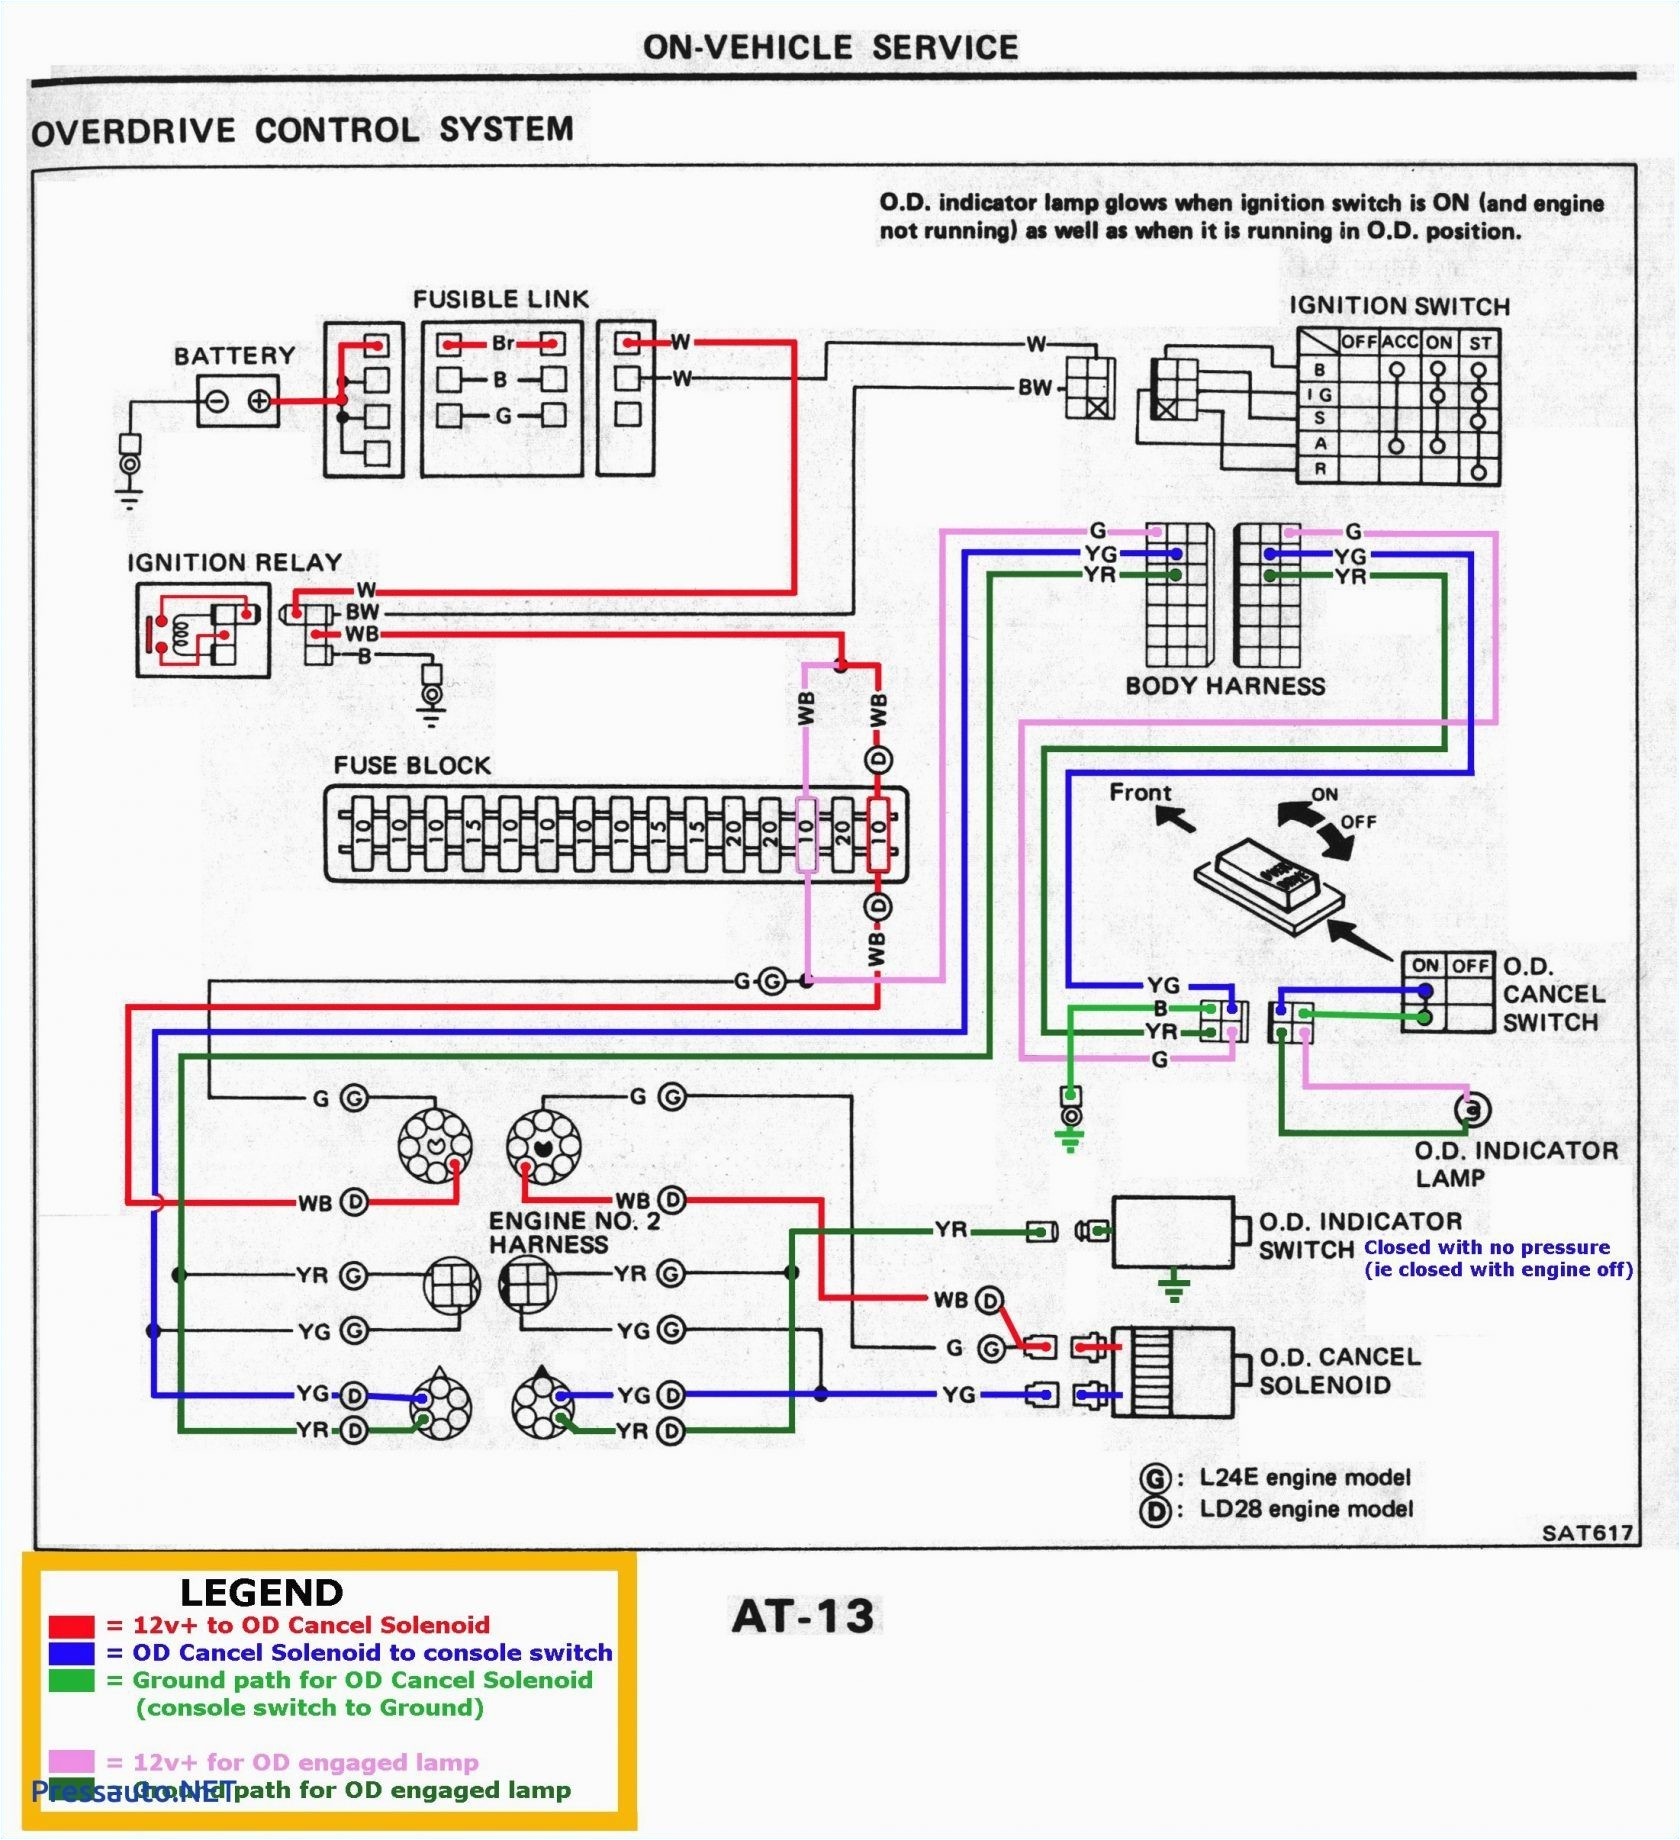 bmw wiring diagram java wiring diagram files bmw wds java wiring diagram